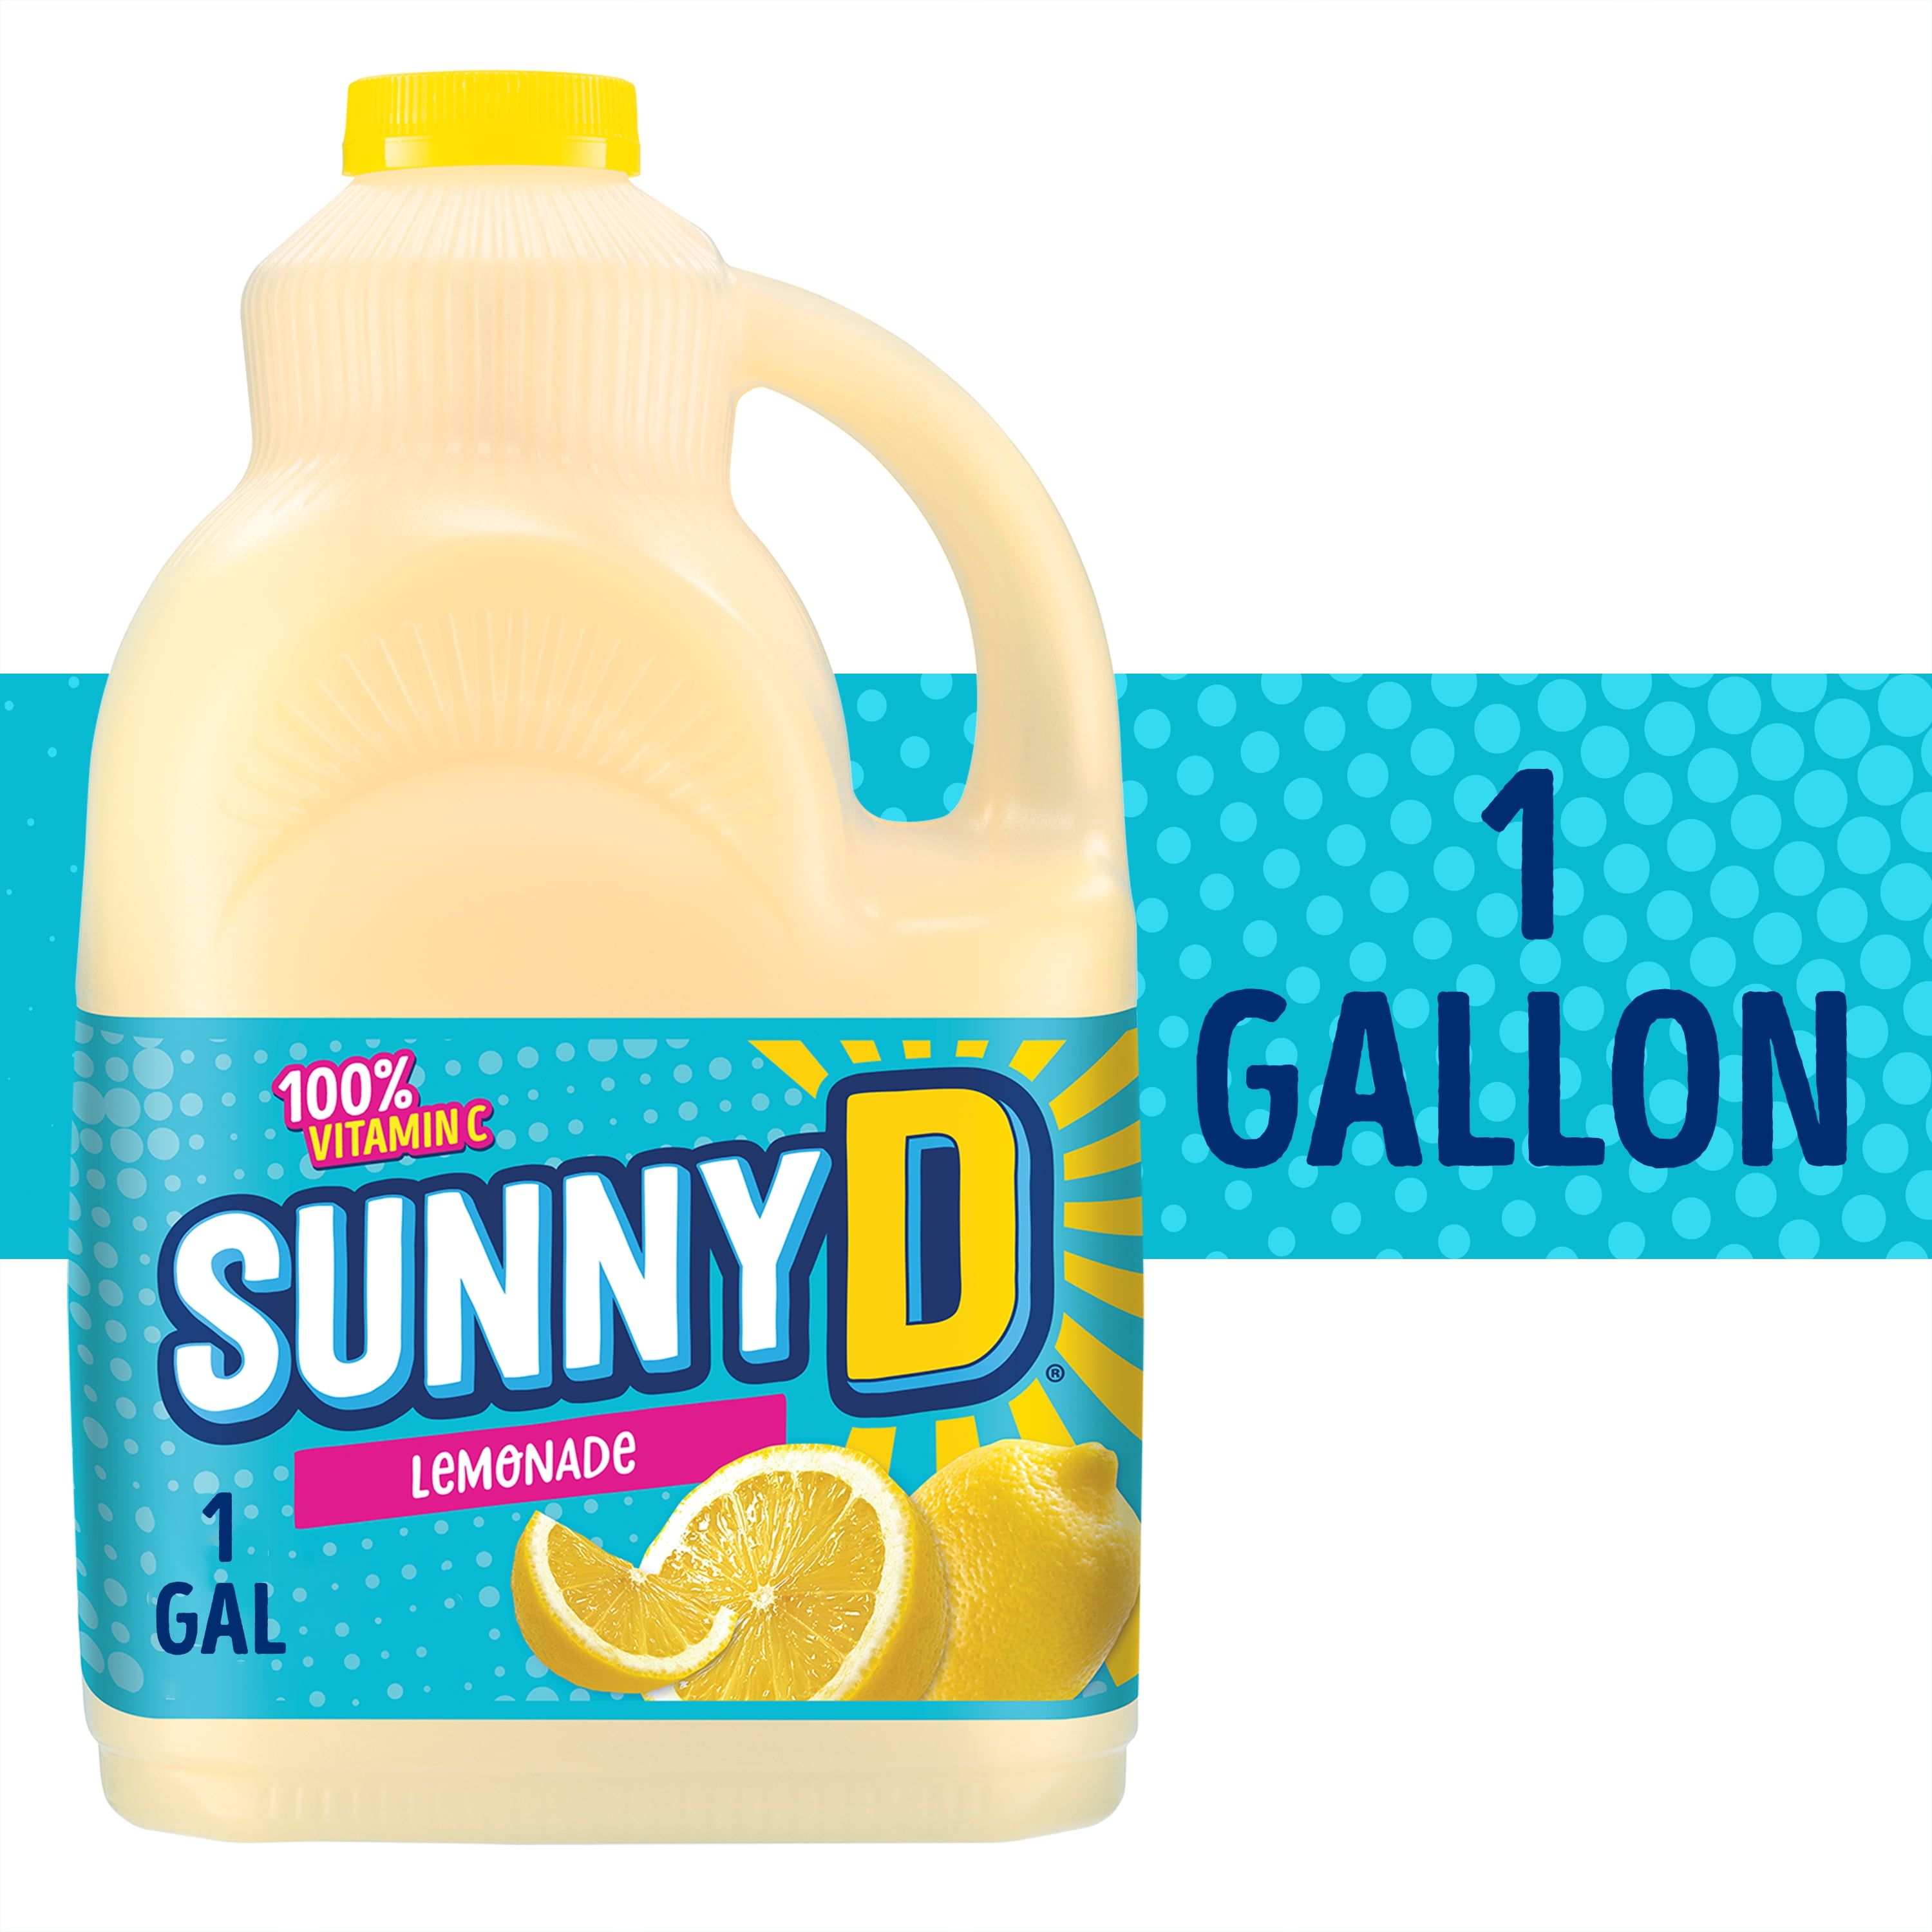 Sunny Lemons Sex Video - SUNNYD Lemonade Lemon Drink, 1 Gallon Bottle - Walmart.com